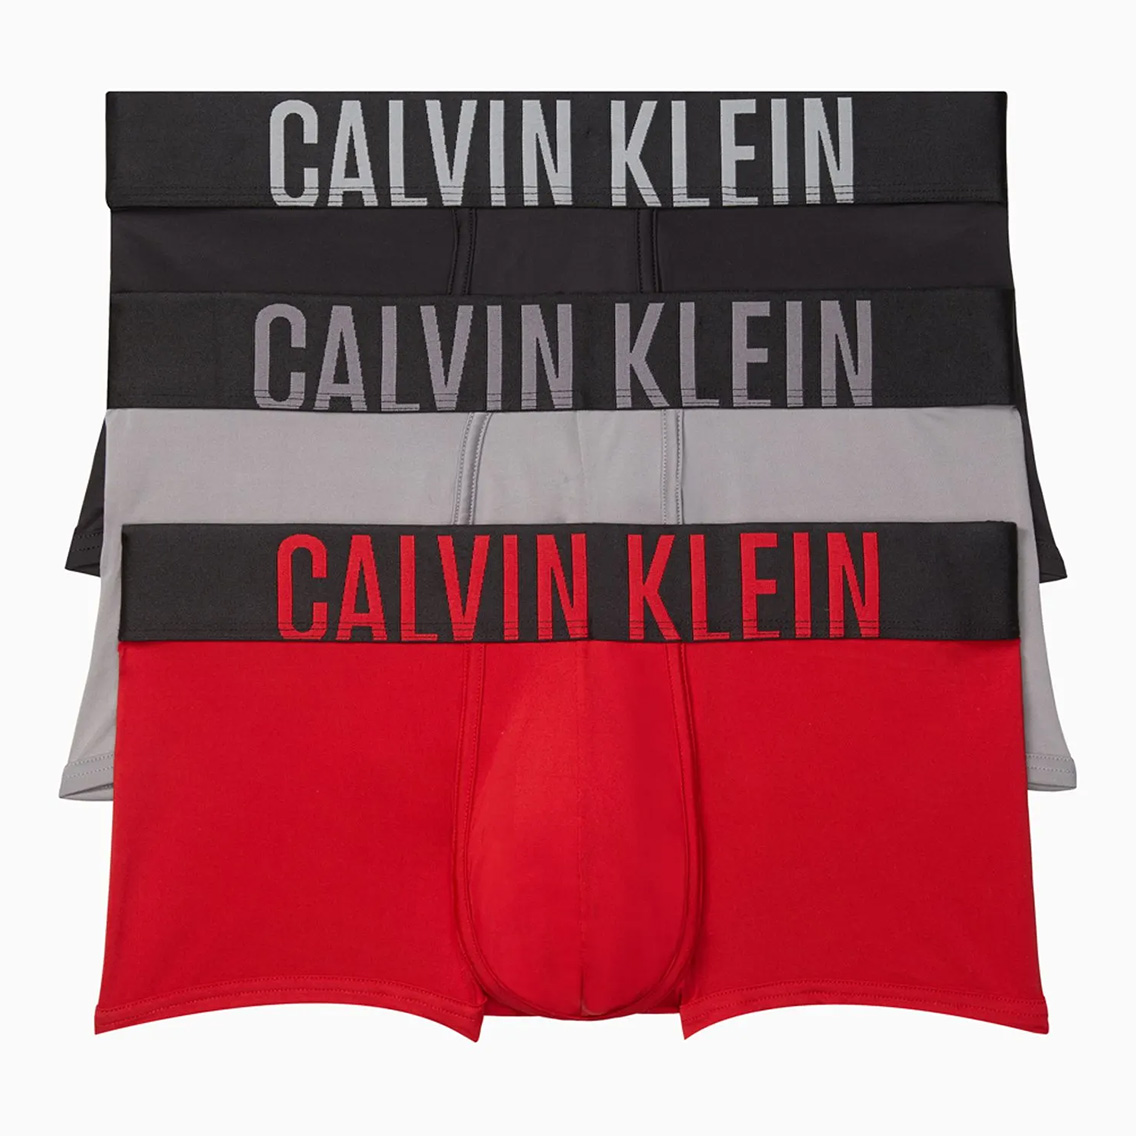 [NB2593-905] Calvin Klein カルバンクライン ボクサーパンツ メンズ アンダーウェア インナー 男性 下着 ブランド おすすめ 人気 プレゼ